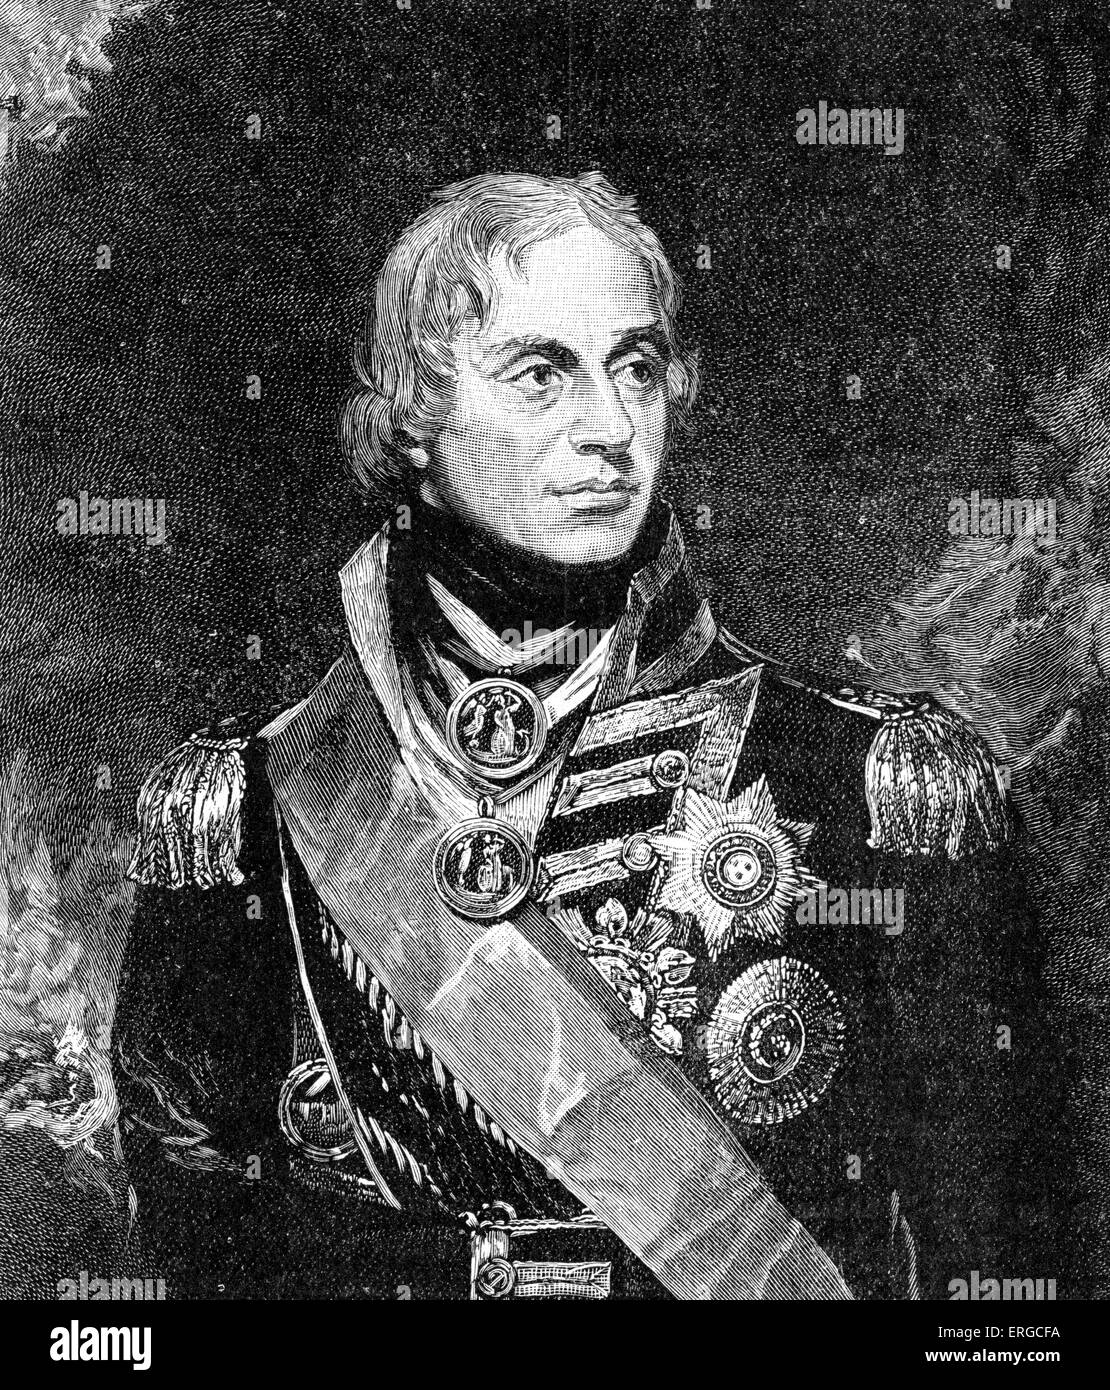 - Lord Horatio Nelson après portrait par Sir William Beechey. L'amiral britannique célèbre pour sa participation à l'épopée napoléonienne Banque D'Images